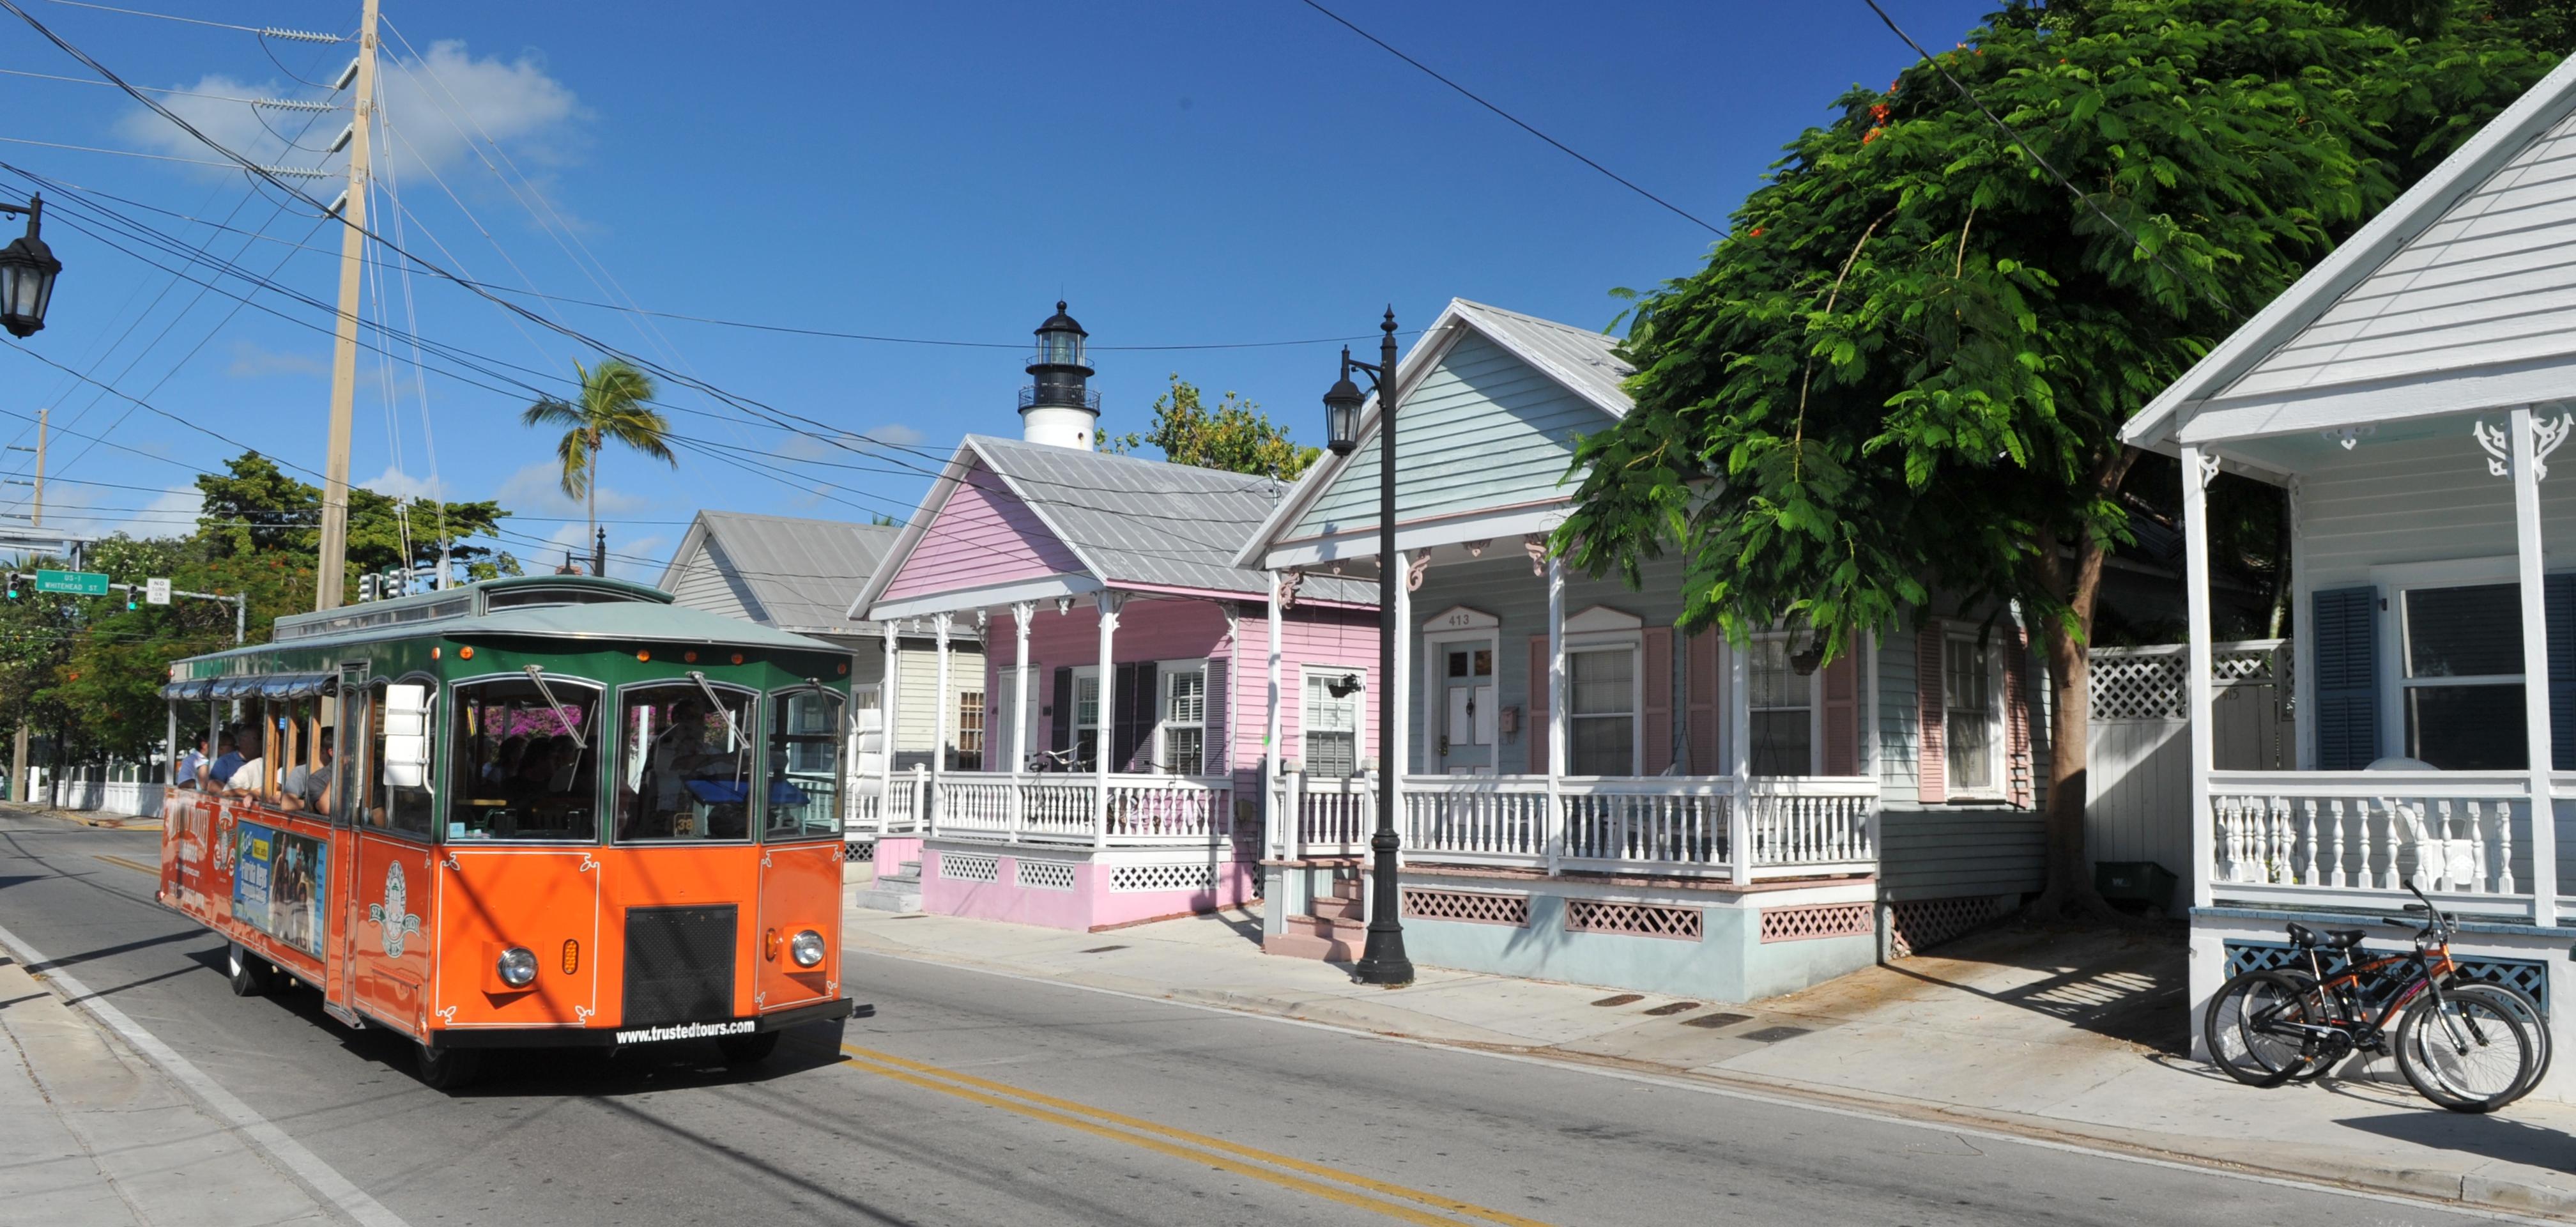 Tour por Key West en trolebús - Paradas múltiples - Billetes válidos 2 días